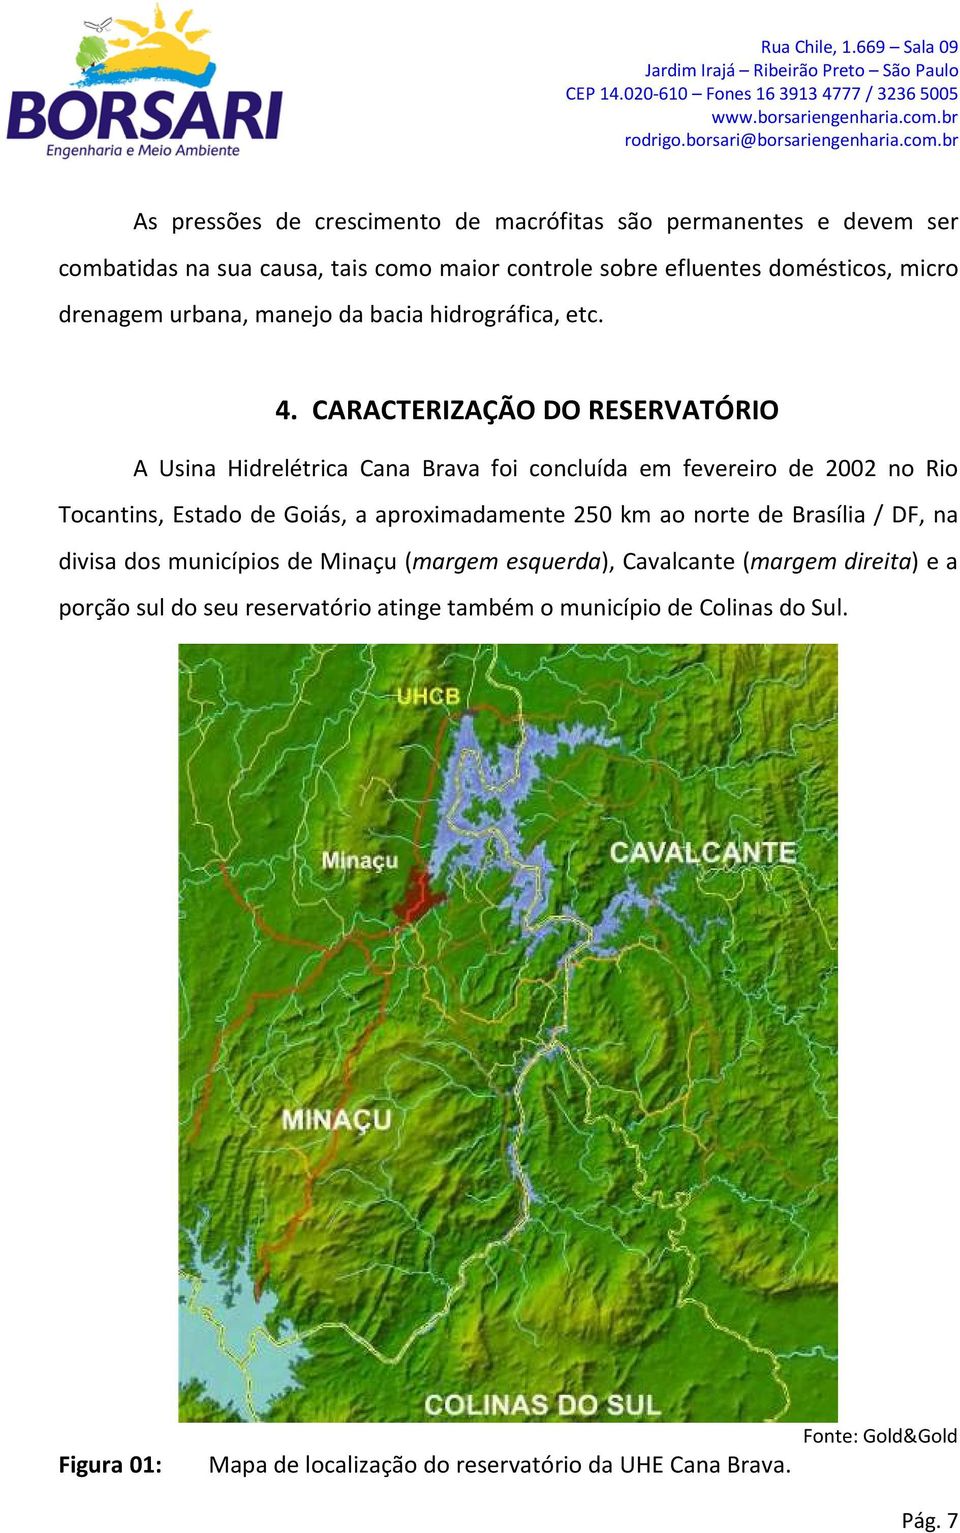 CARACTERIZAÇÃO DO RESERVATÓRIO A Usina Hidrelétrica Cana Brava foi concluída em fevereiro de 2002 no Rio Tocantins, Estado de Goiás, a aproximadamente 250 km ao